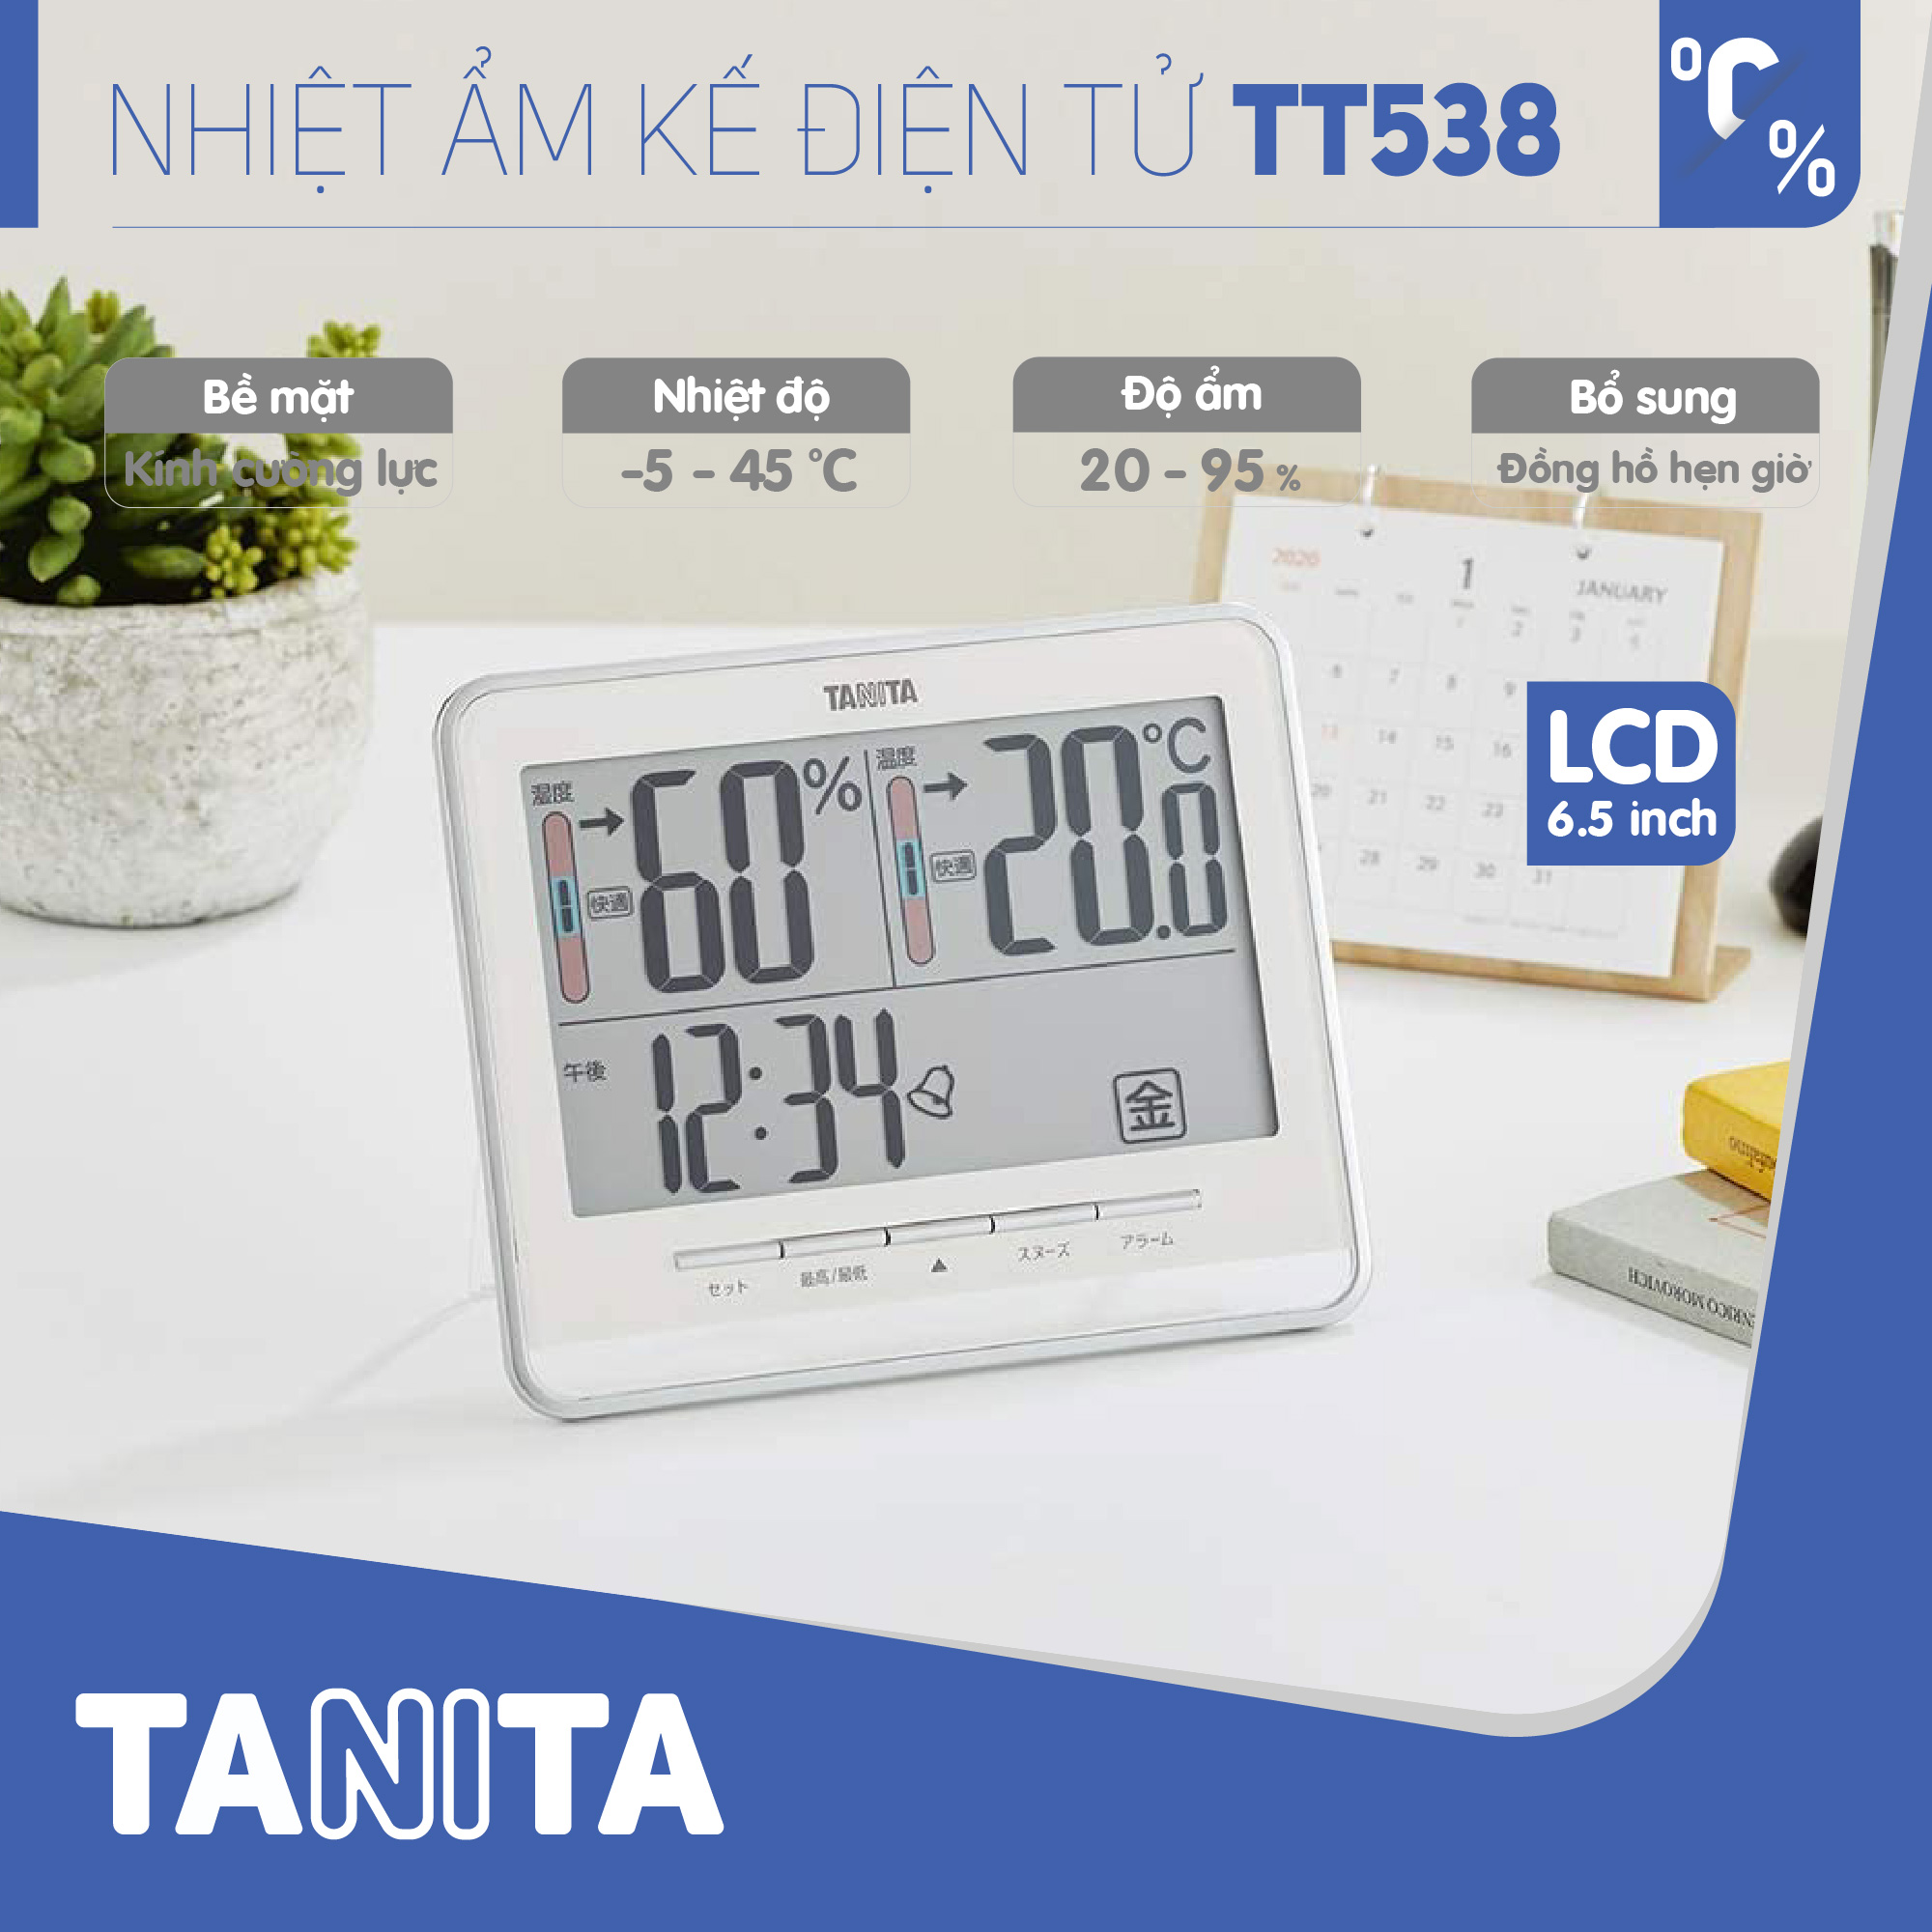 Nhiệt ẩm kế điện tử TANITA TT538 chính hãng nhật bản,thiết bị đo độ ẩm nhiệt độ chính xác,màn hình rõ ràng,hiển thị ngày giờ chuông báo thức,có lỗ treo,để bàn phù hợp trong phòng lạnh, bệnh viện, gia đình có trẻ sơ sinh